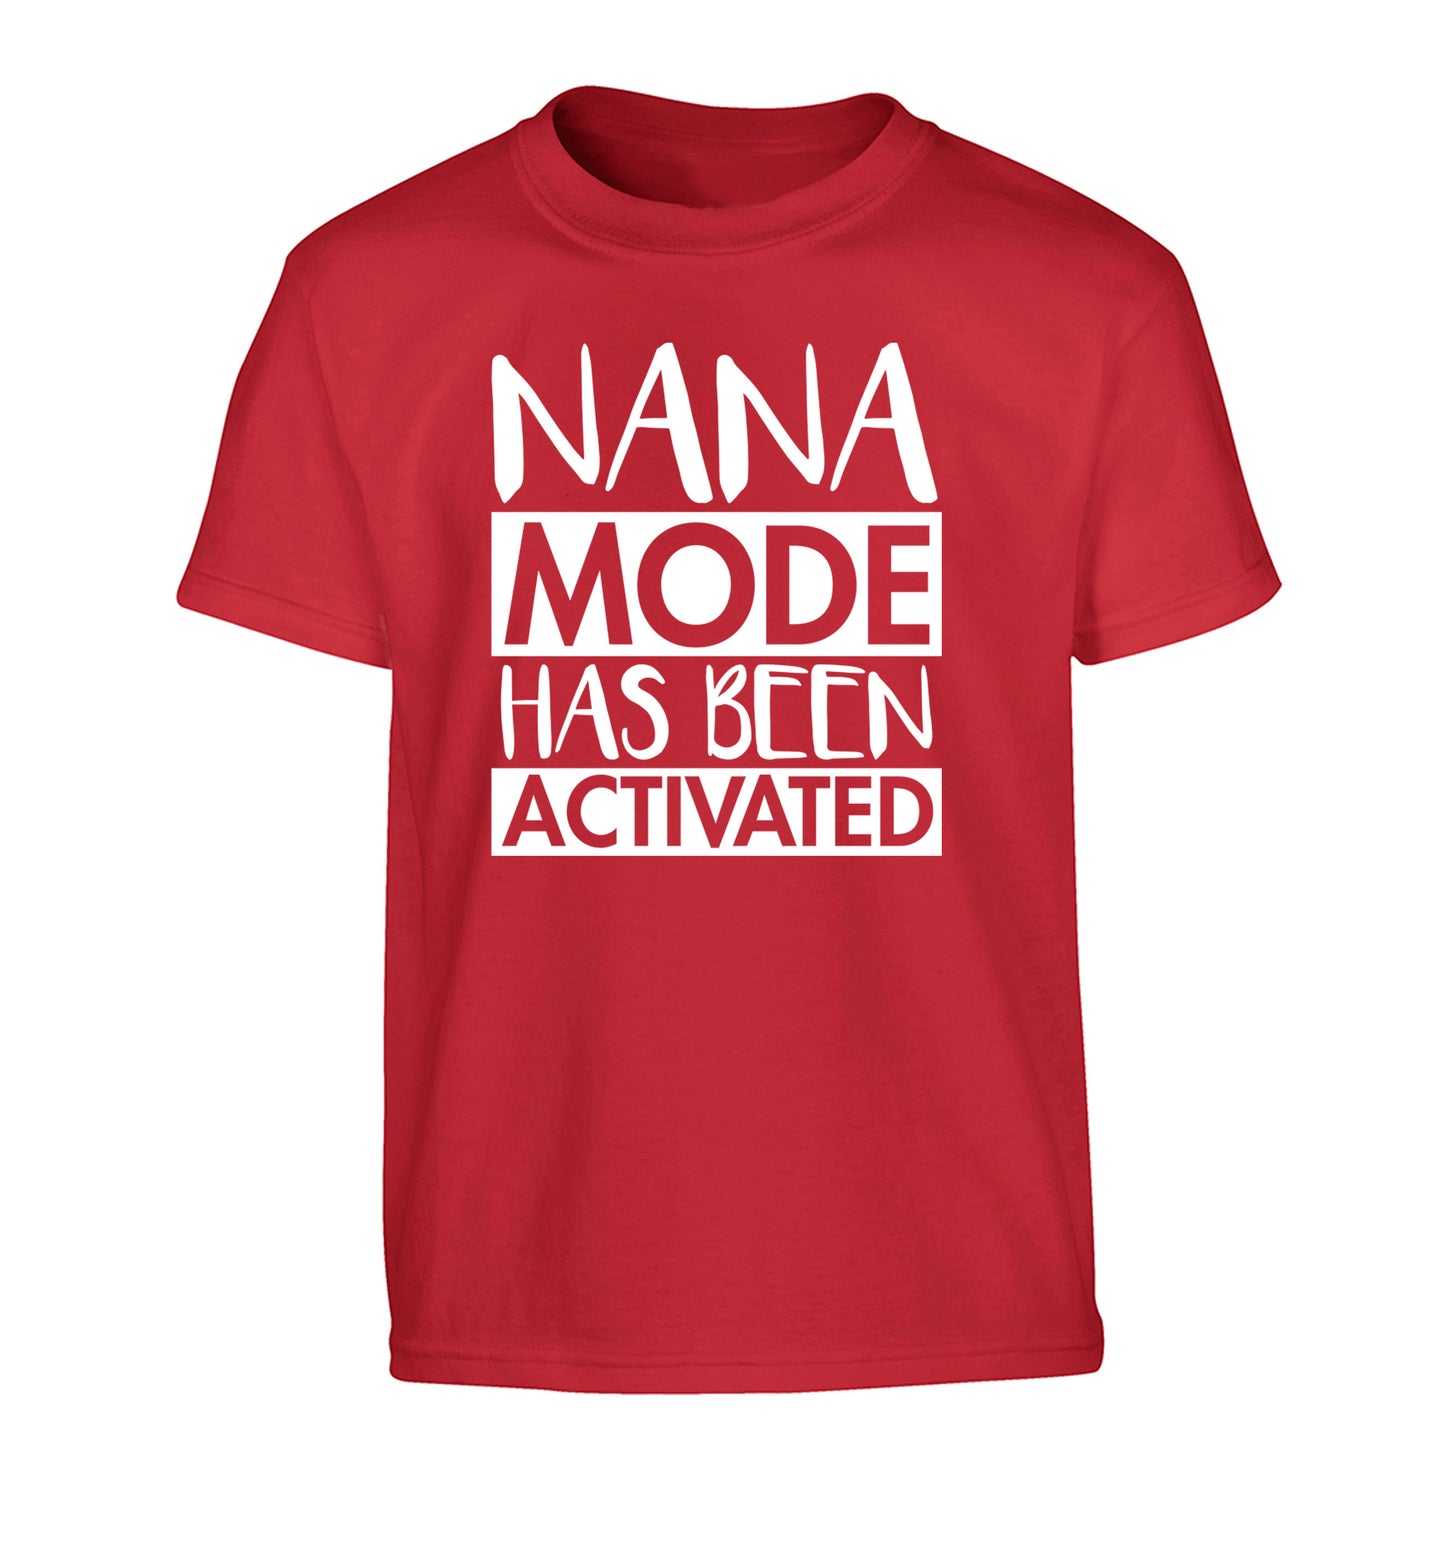 Nana mode activated Children's red Tshirt 12-14 Years